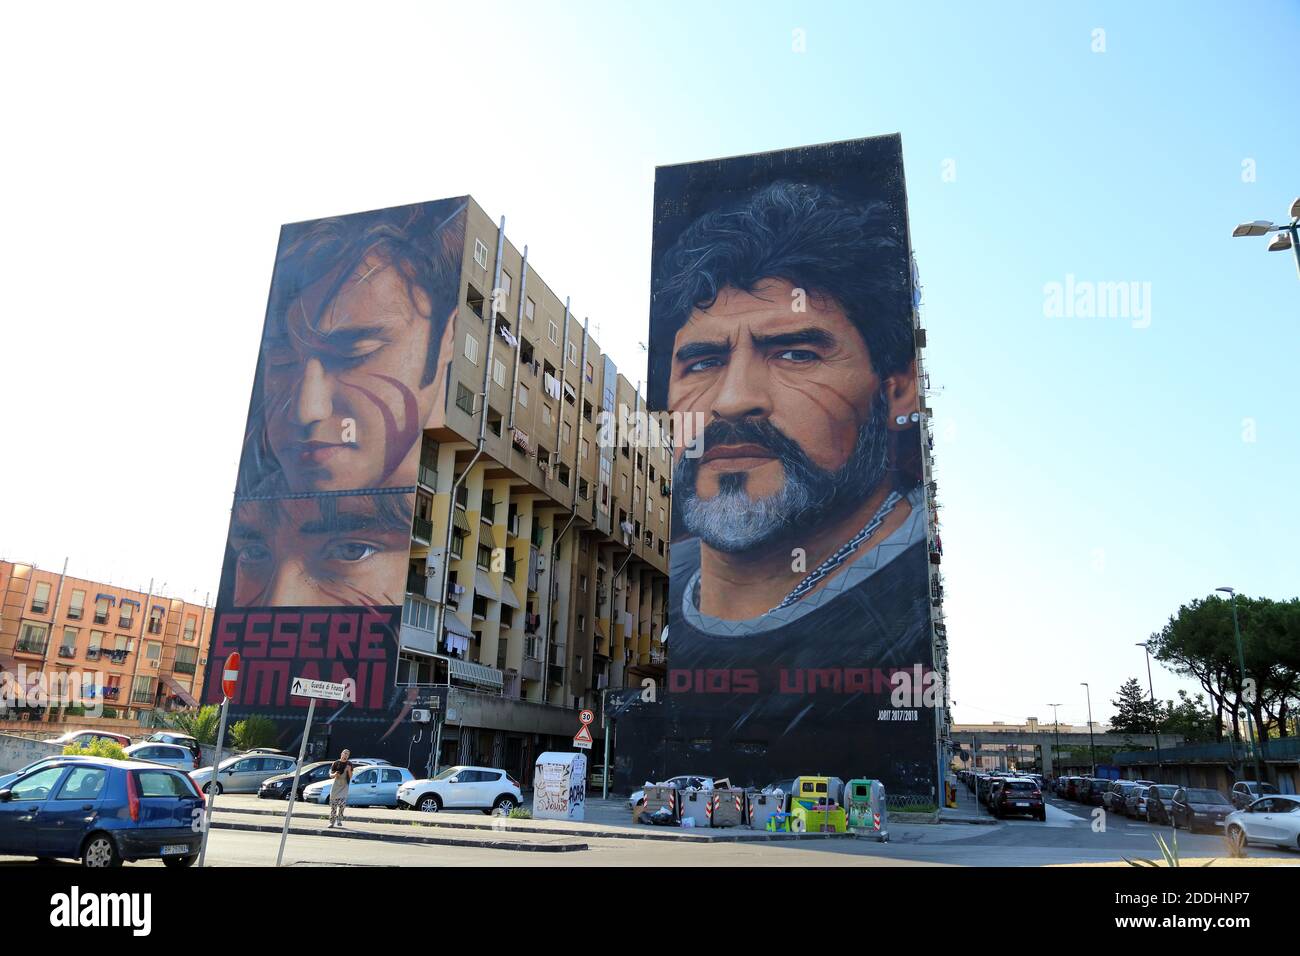 Napoli, Italia - 17 settembre 2019: Il volto di Diego Armando Maradona sulla facciata di un edificio nella parte orientale della città dall'artista di strada Jorit Ciro Cerullo Foto Stock